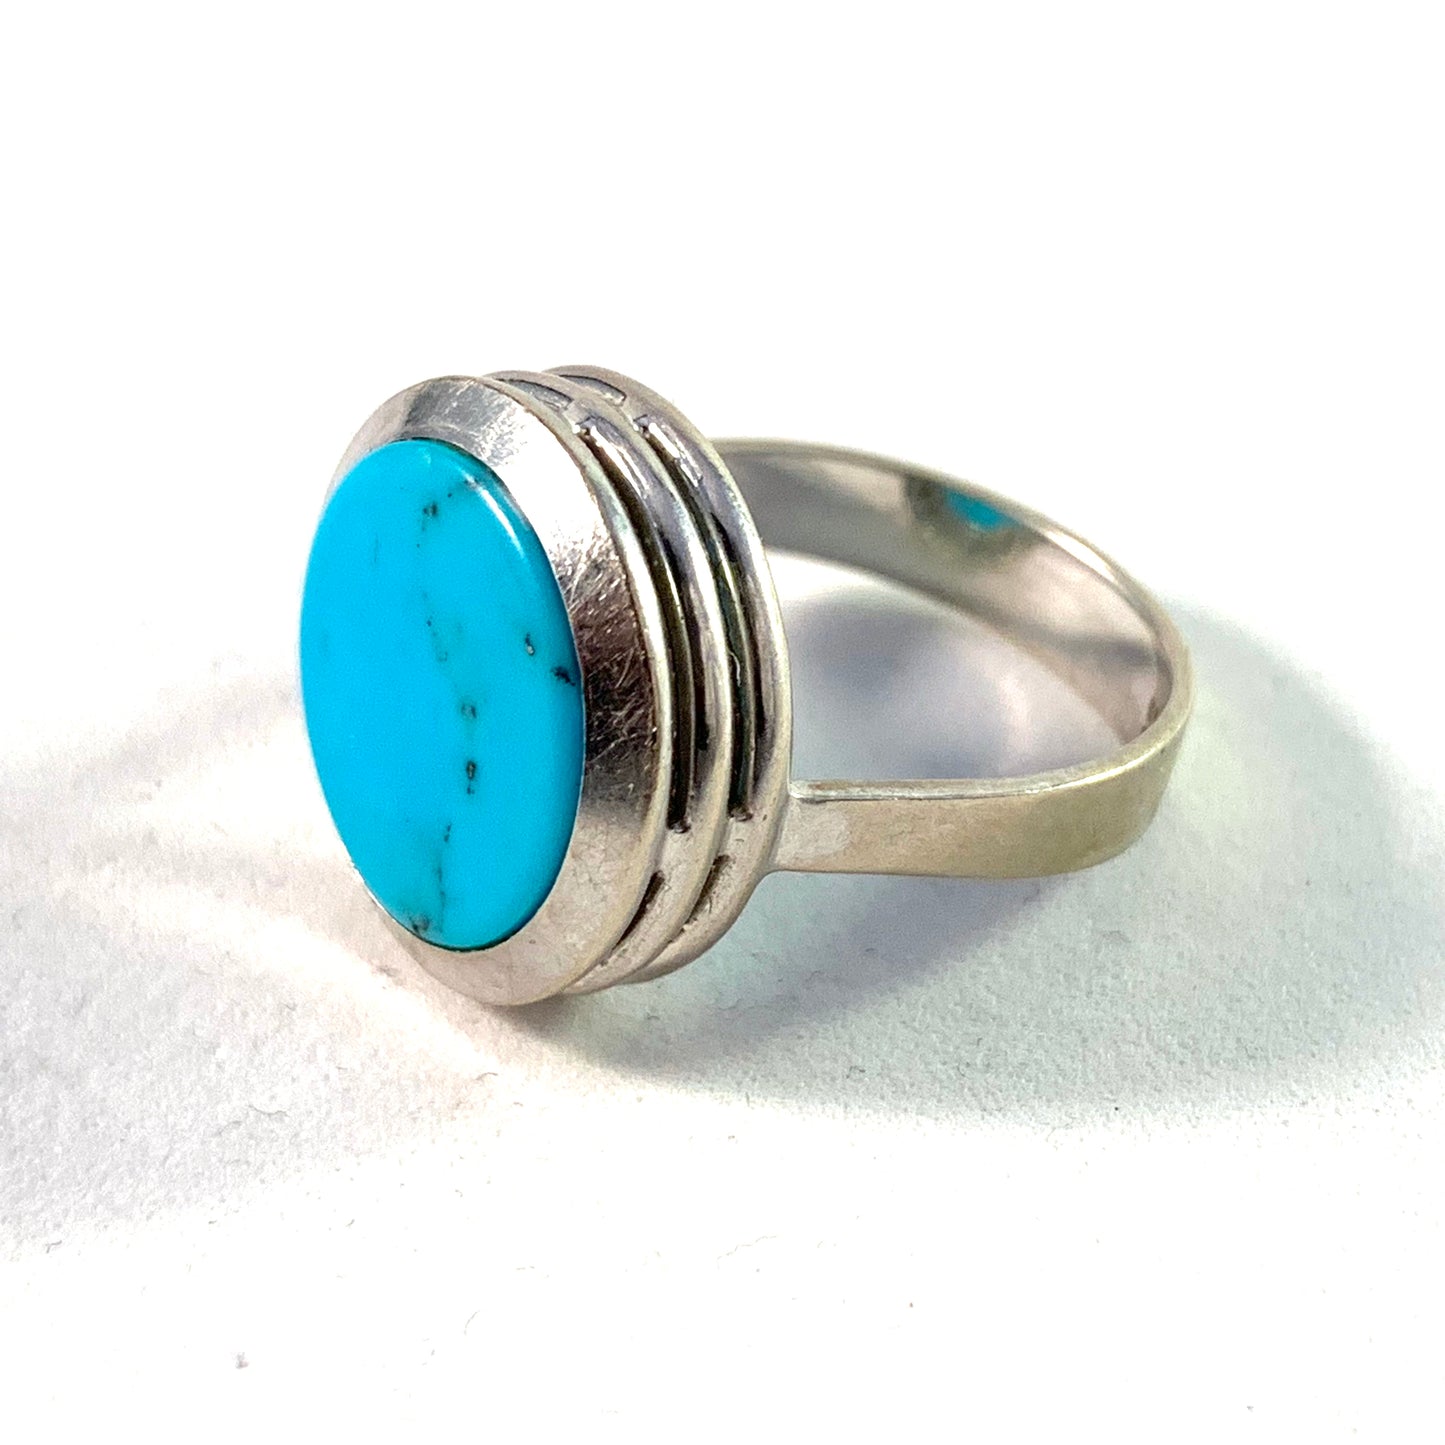 Vintage 1960s 14k White Gold Turquoise Ring. Maker's mark.